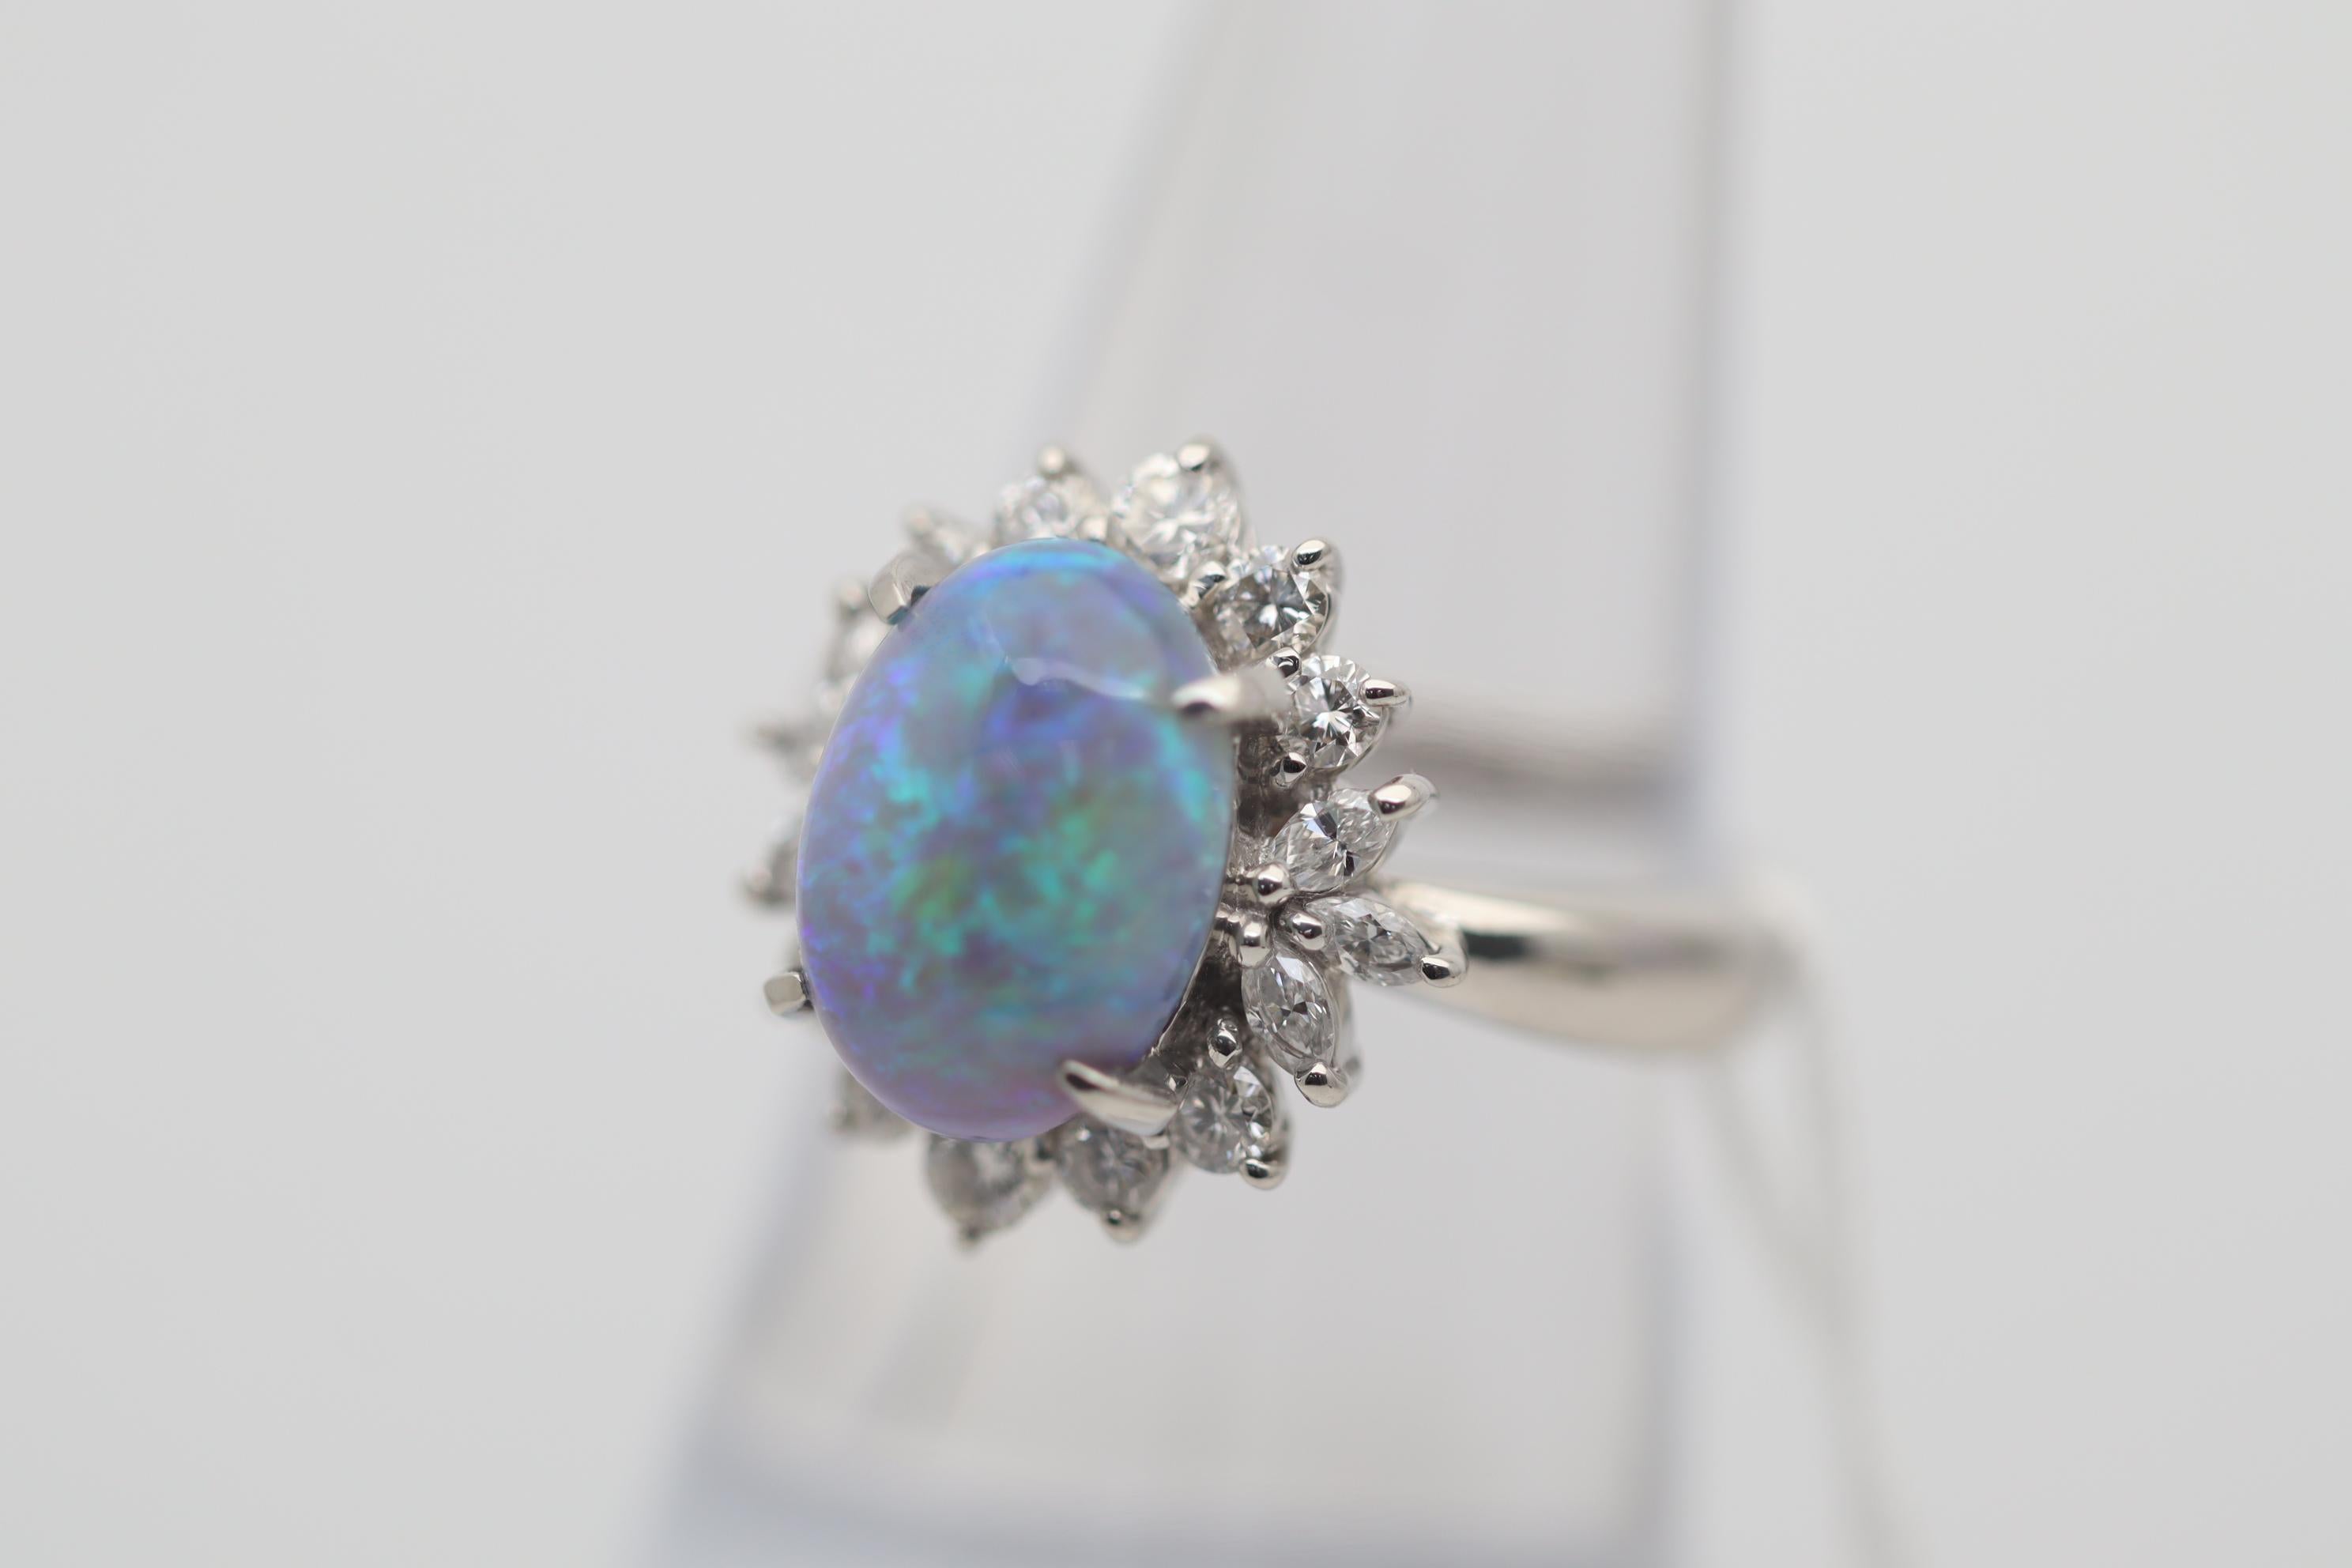 Ein schöner Platinring mit einem australischen Kristallopal von 3,28 Karat. Er hat ein großartiges Farbenspiel, bei dem Grün- und Blautöne über den Stein tanzen. Ergänzt wird er durch 0,77 Karat runde Brillanten und Diamanten in Marquise-Form, die